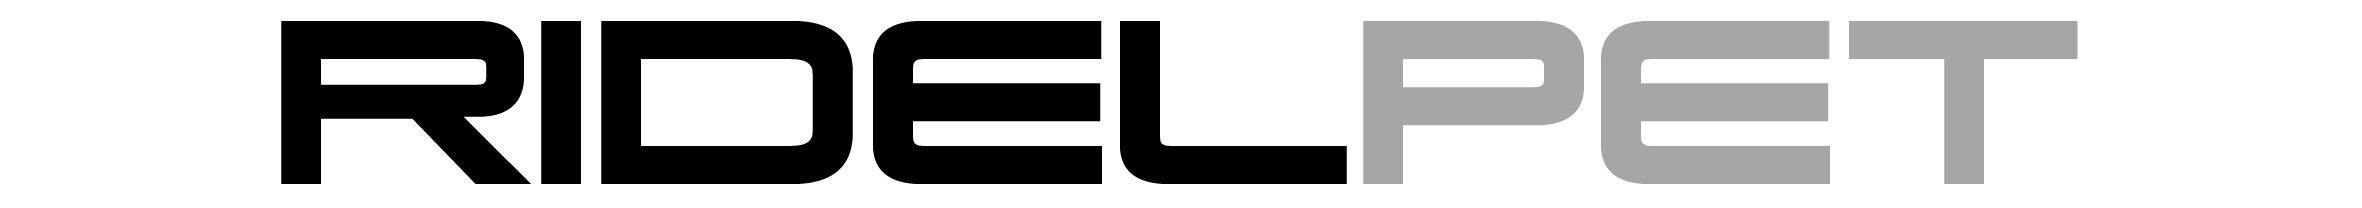 logo-ridelpet.png